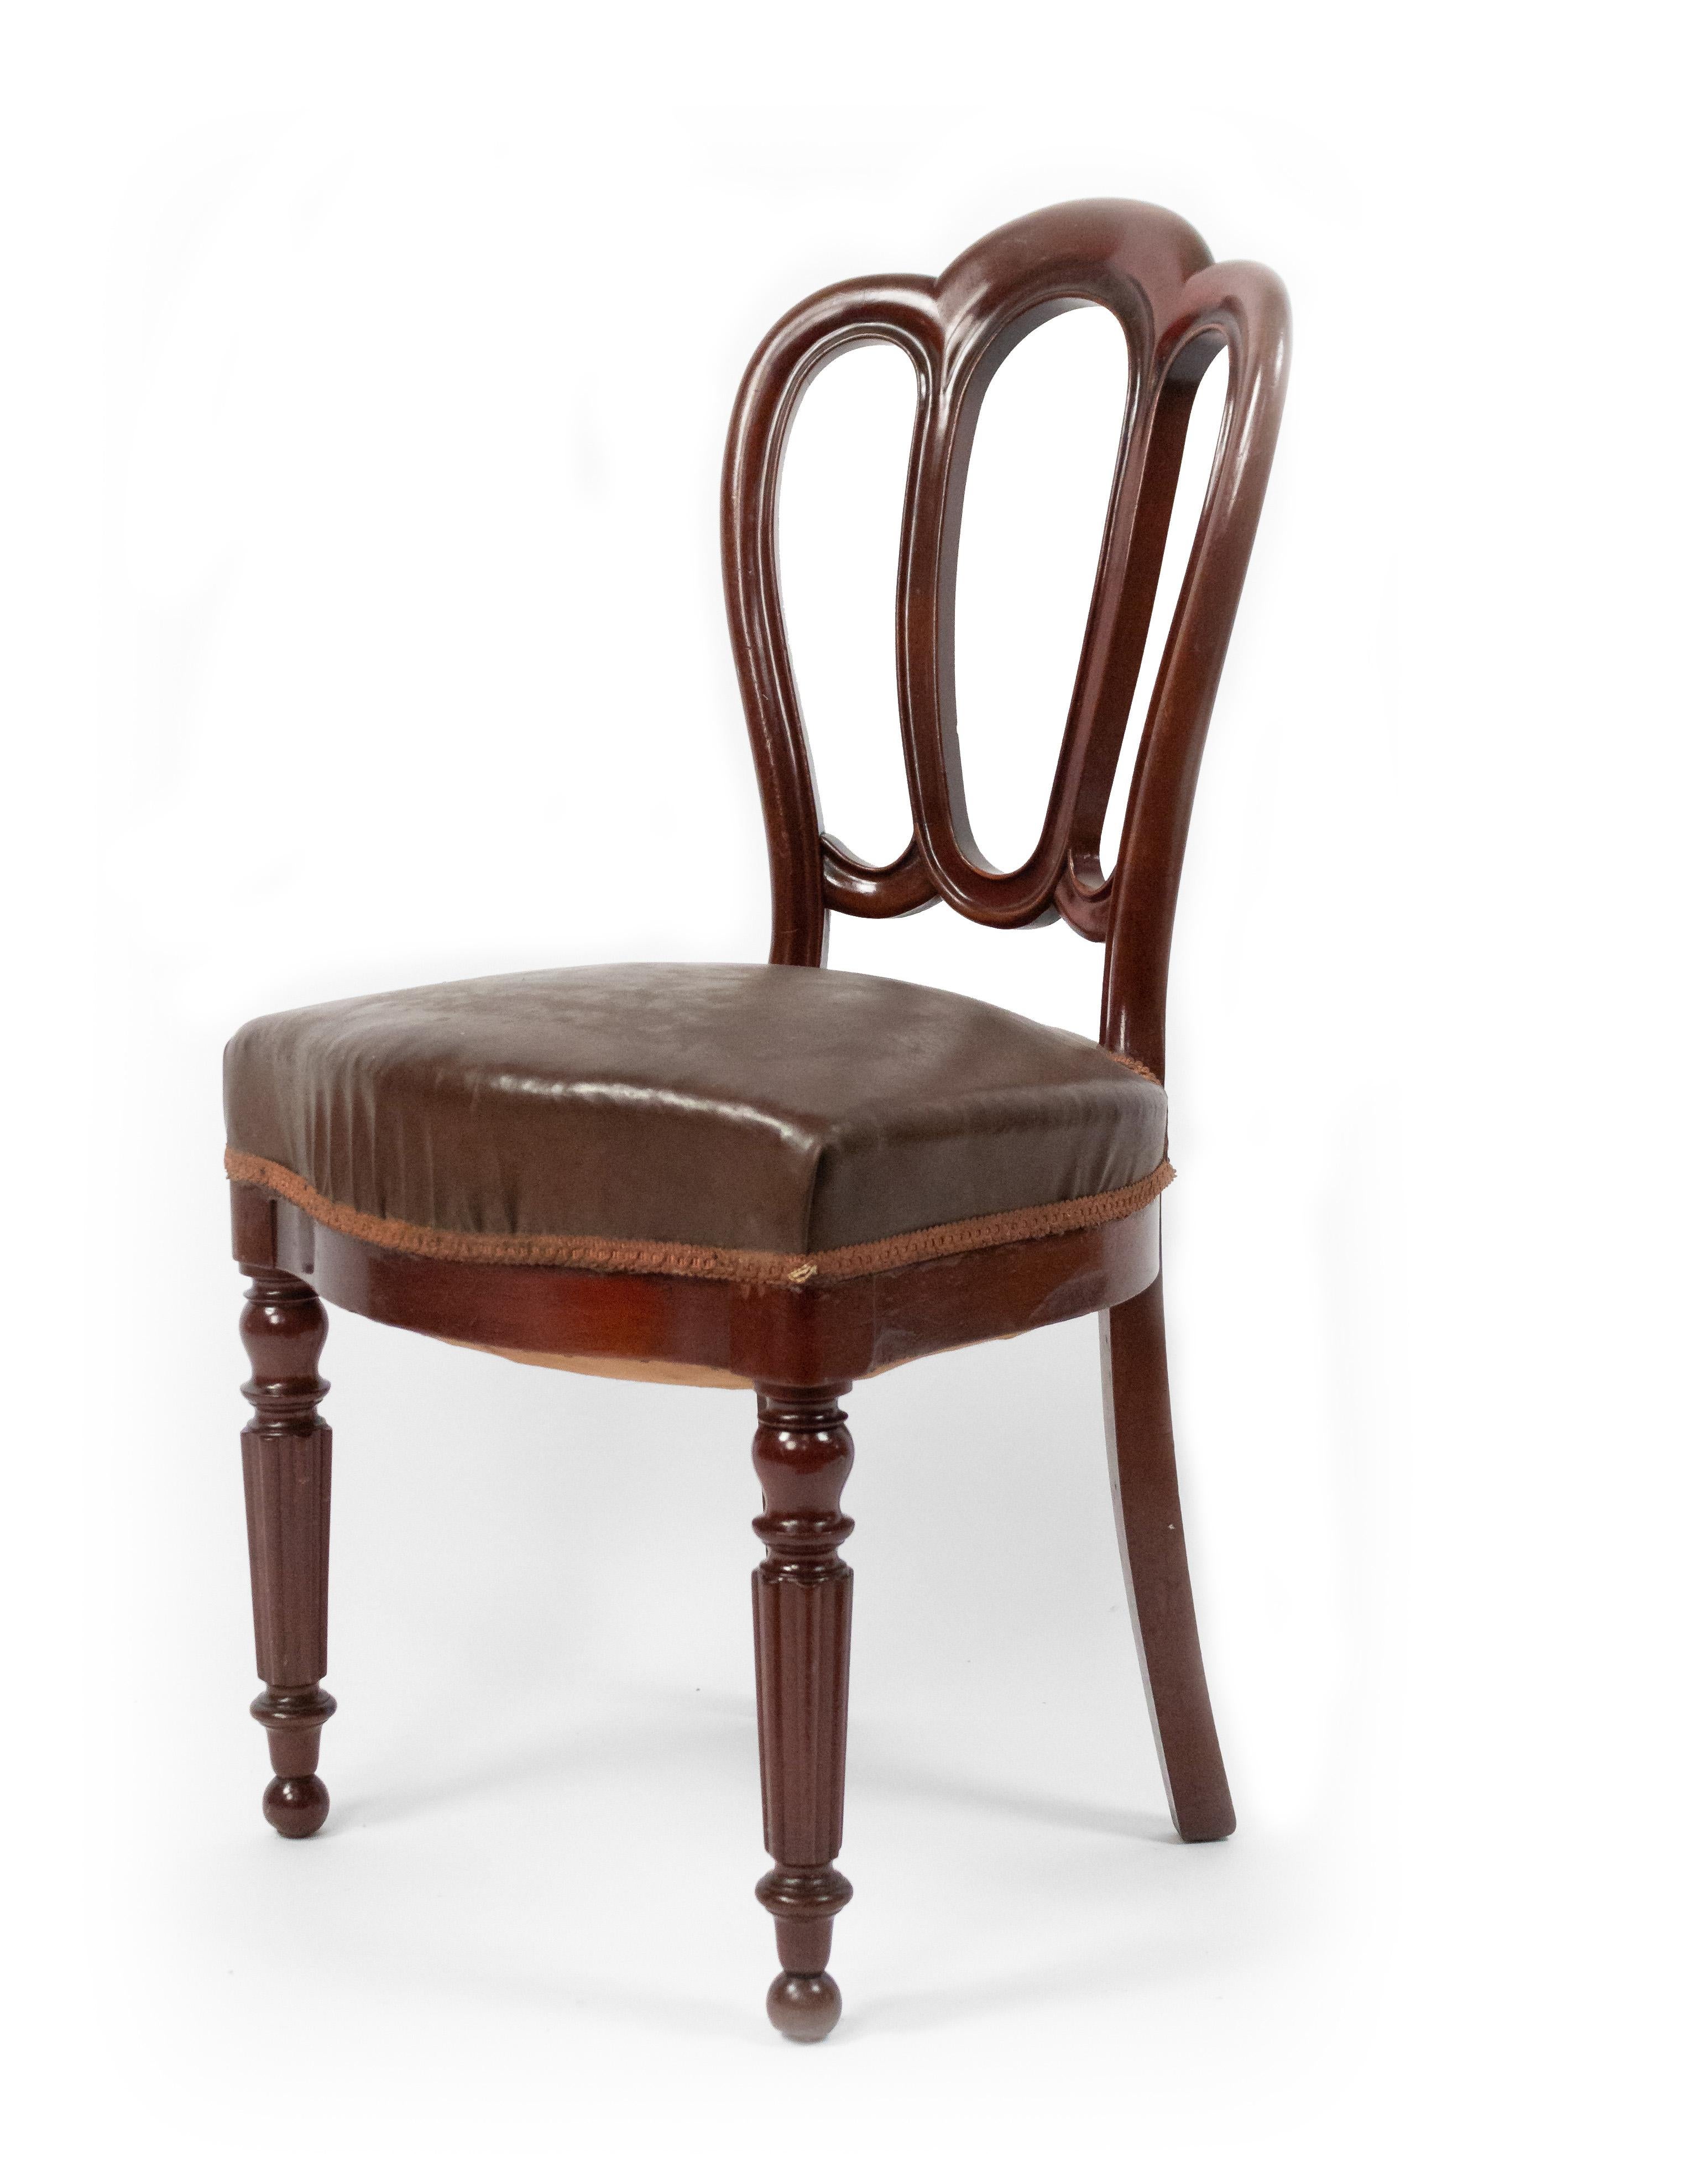 Juego de 10 sillas francesas victorianas (finales del siglo XIX) de caoba, con respaldo abierto, asiento de cuero y patas delanteras estriadas.